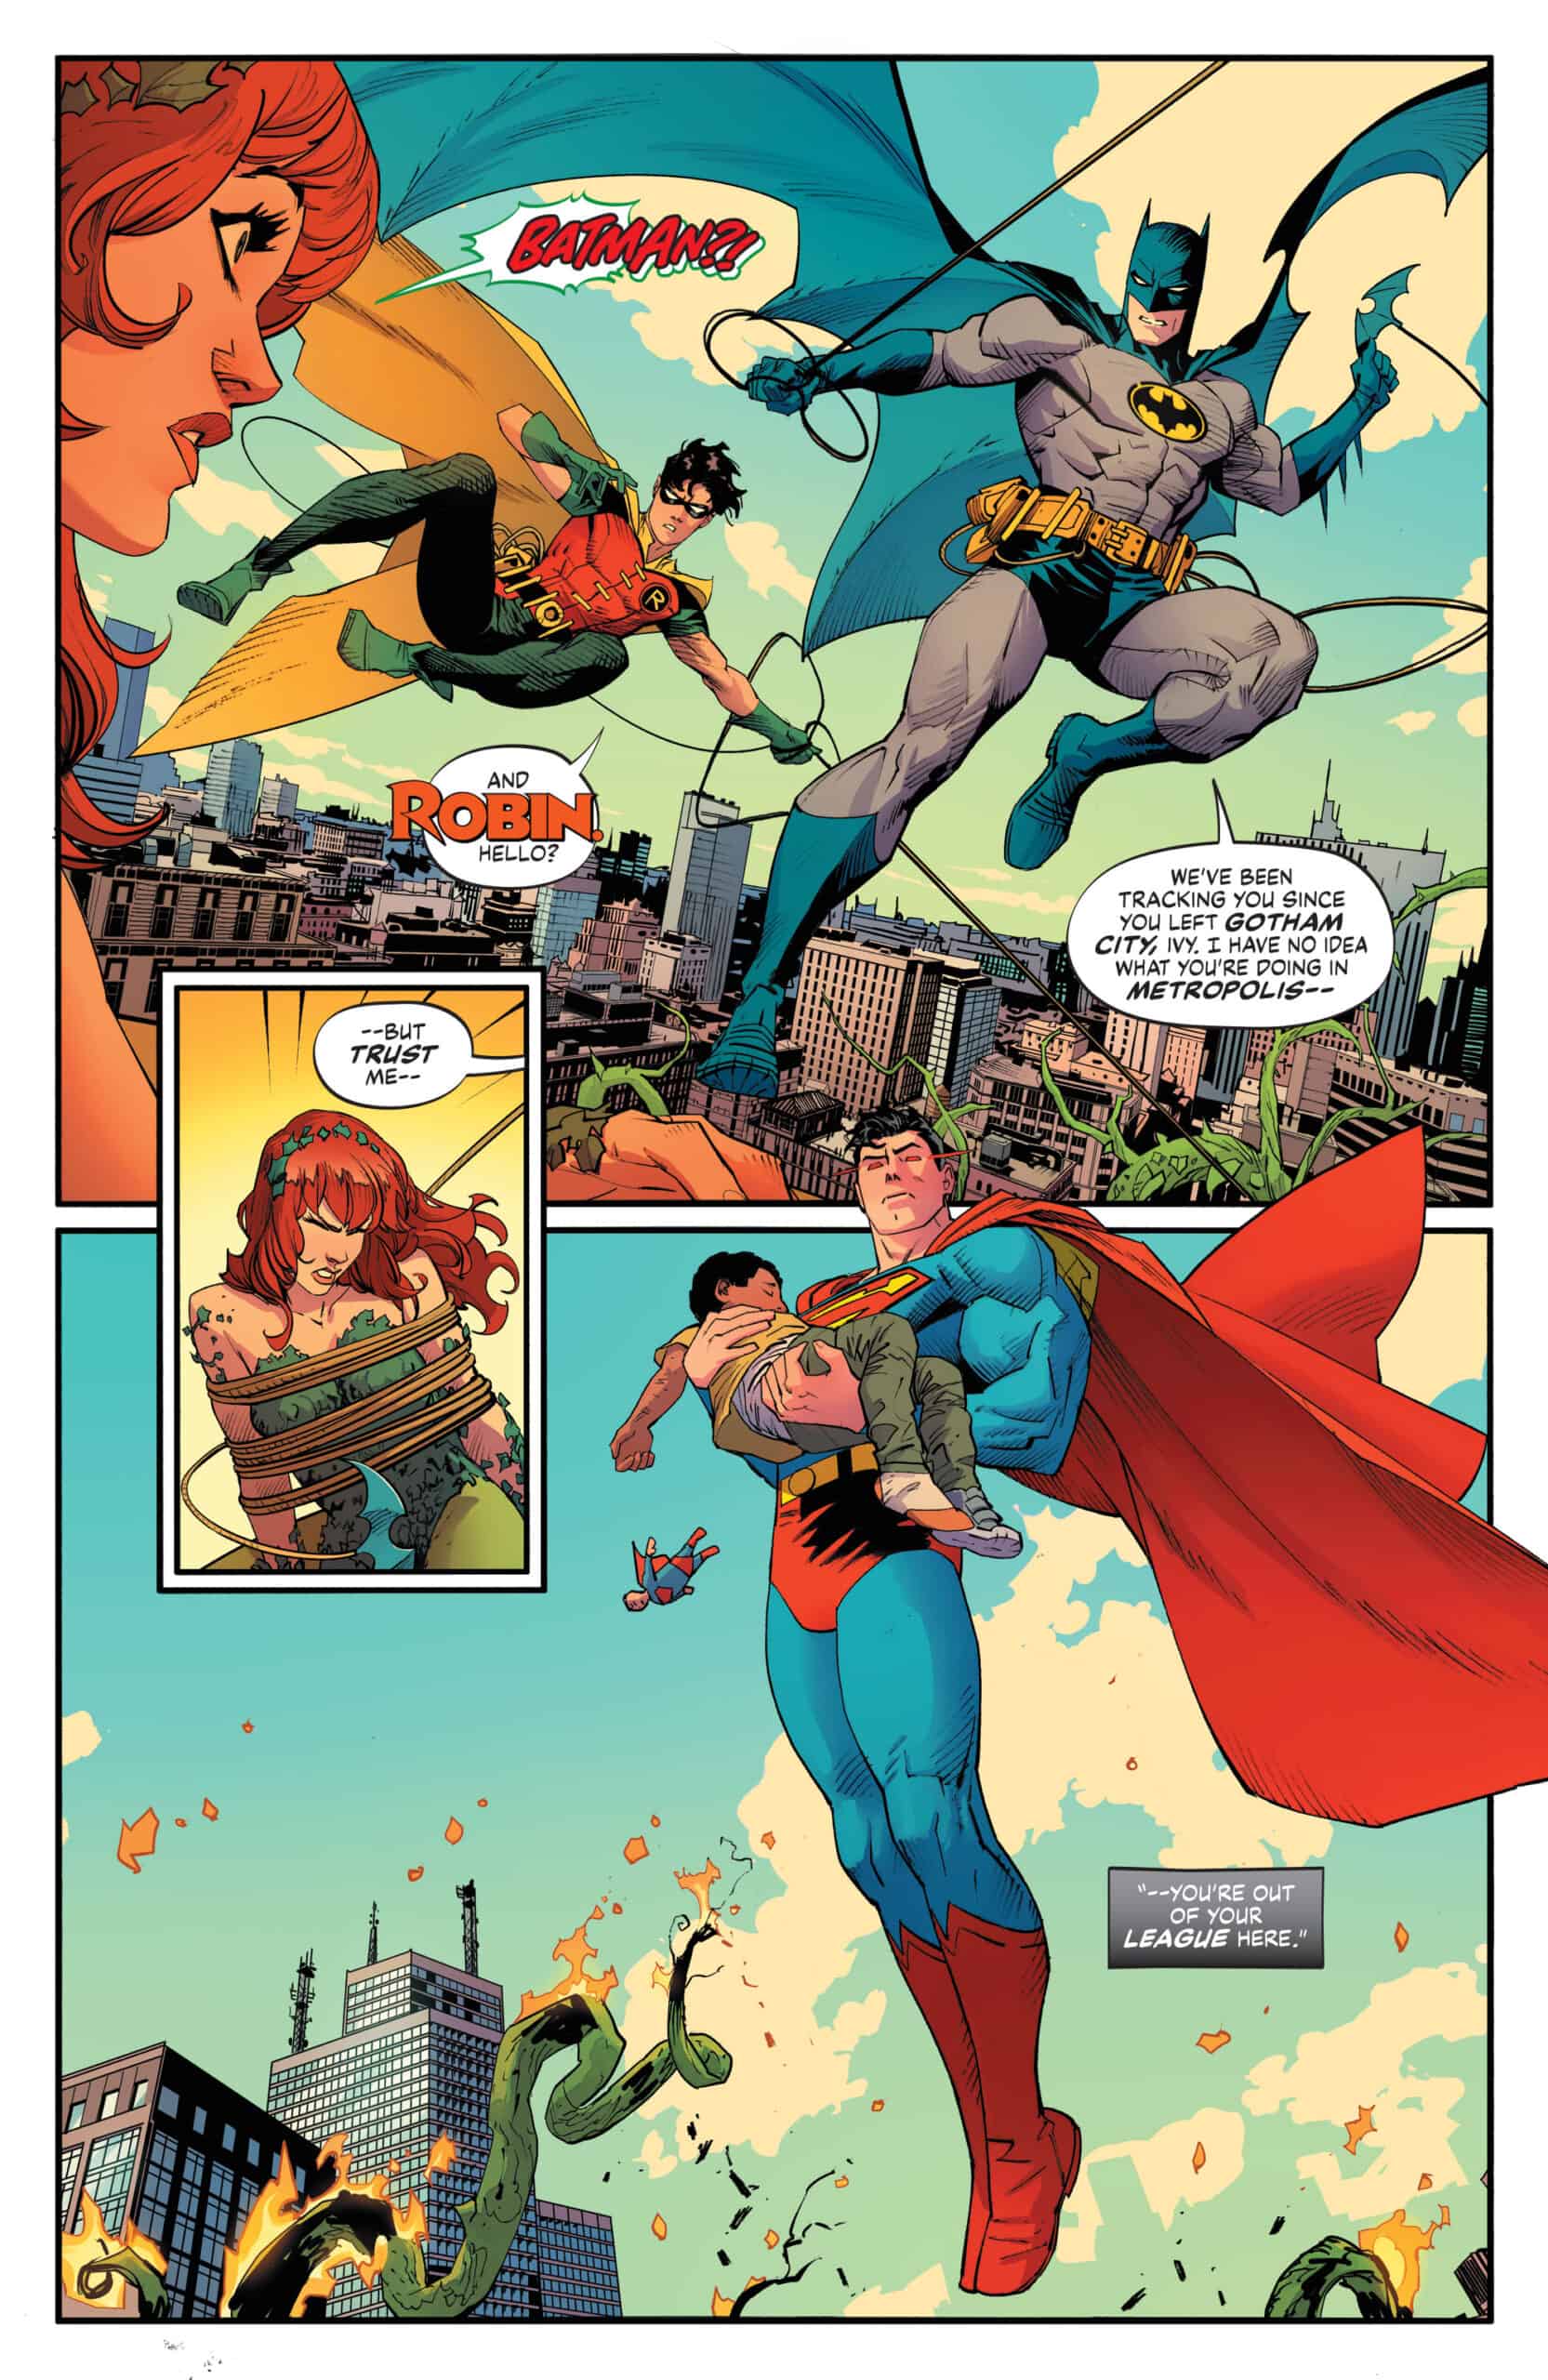 SNEAK PEEK: Preview of DC's BATMAN / SUPERMAN: WORLD'S FINEST #1 (On Sale  3/15!) - Comic Watch